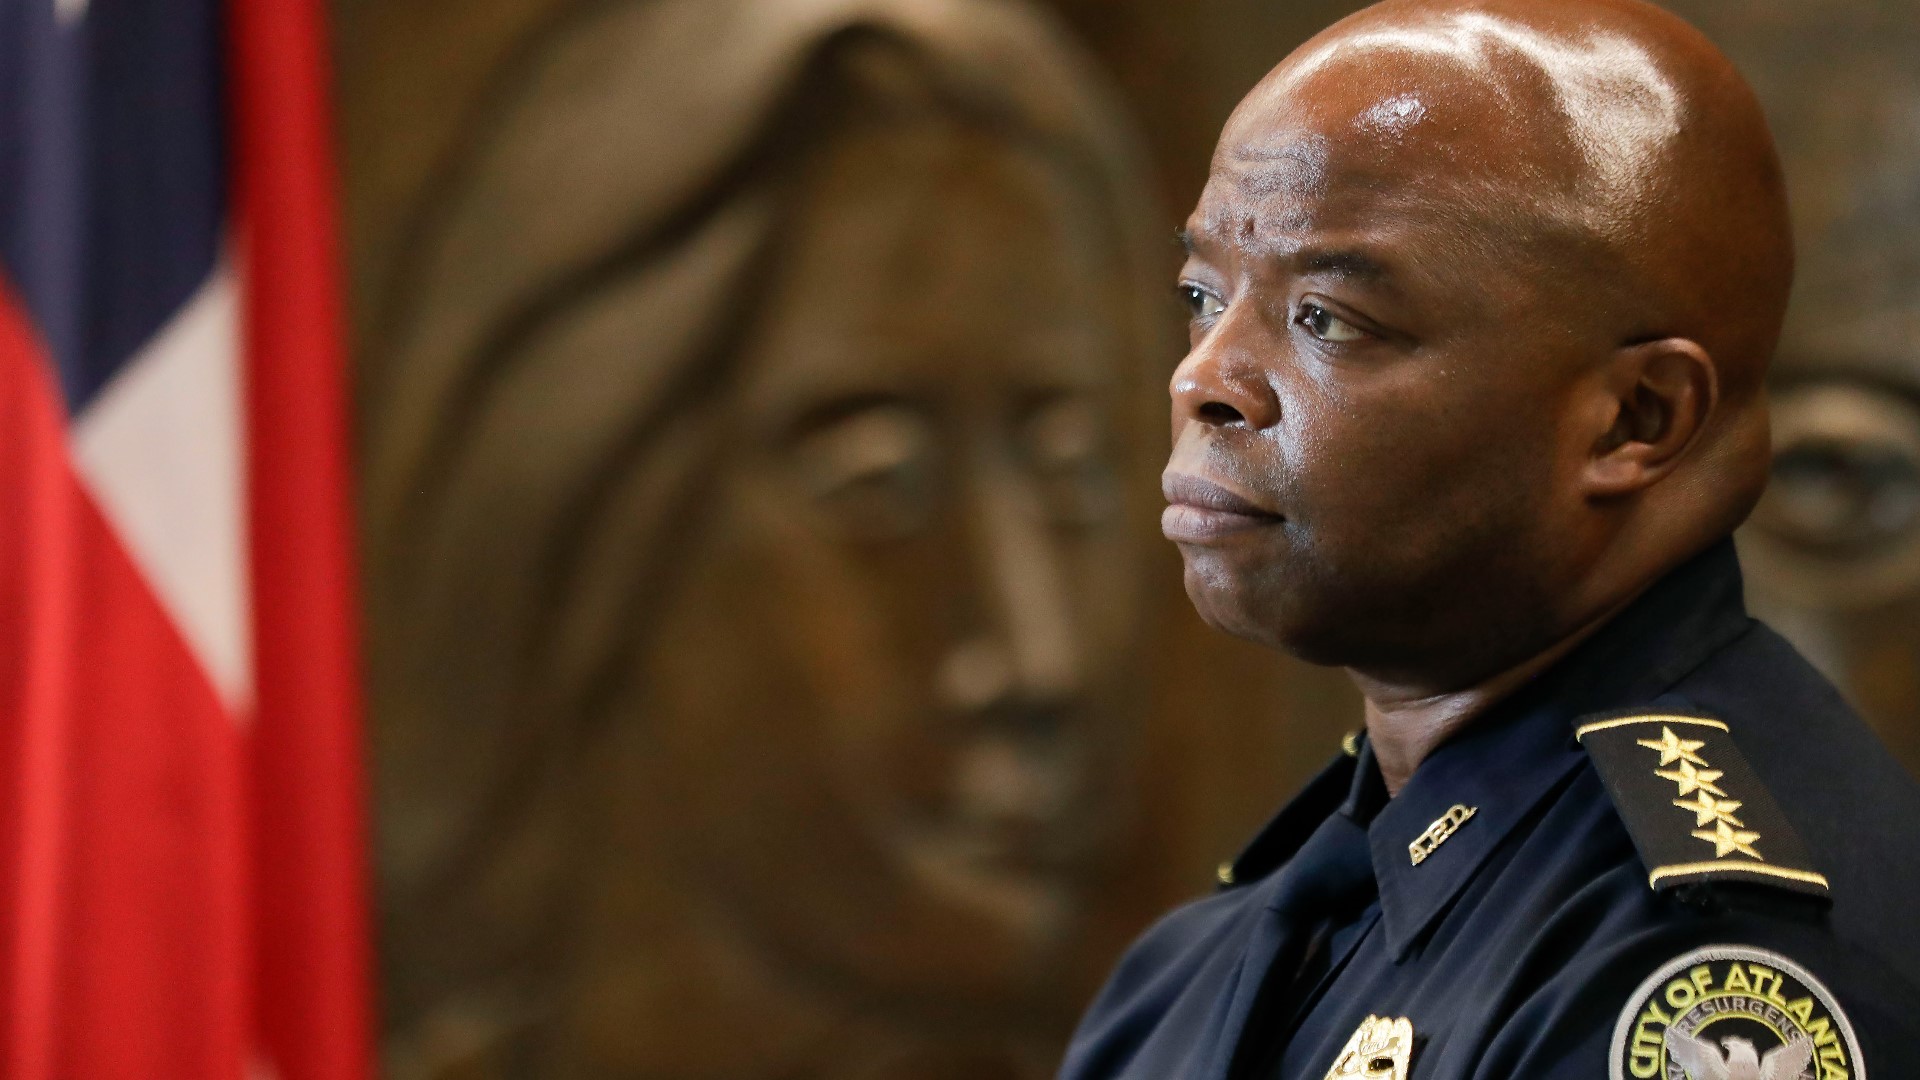 Bryant began his Atlanta Police Department career in 1988.